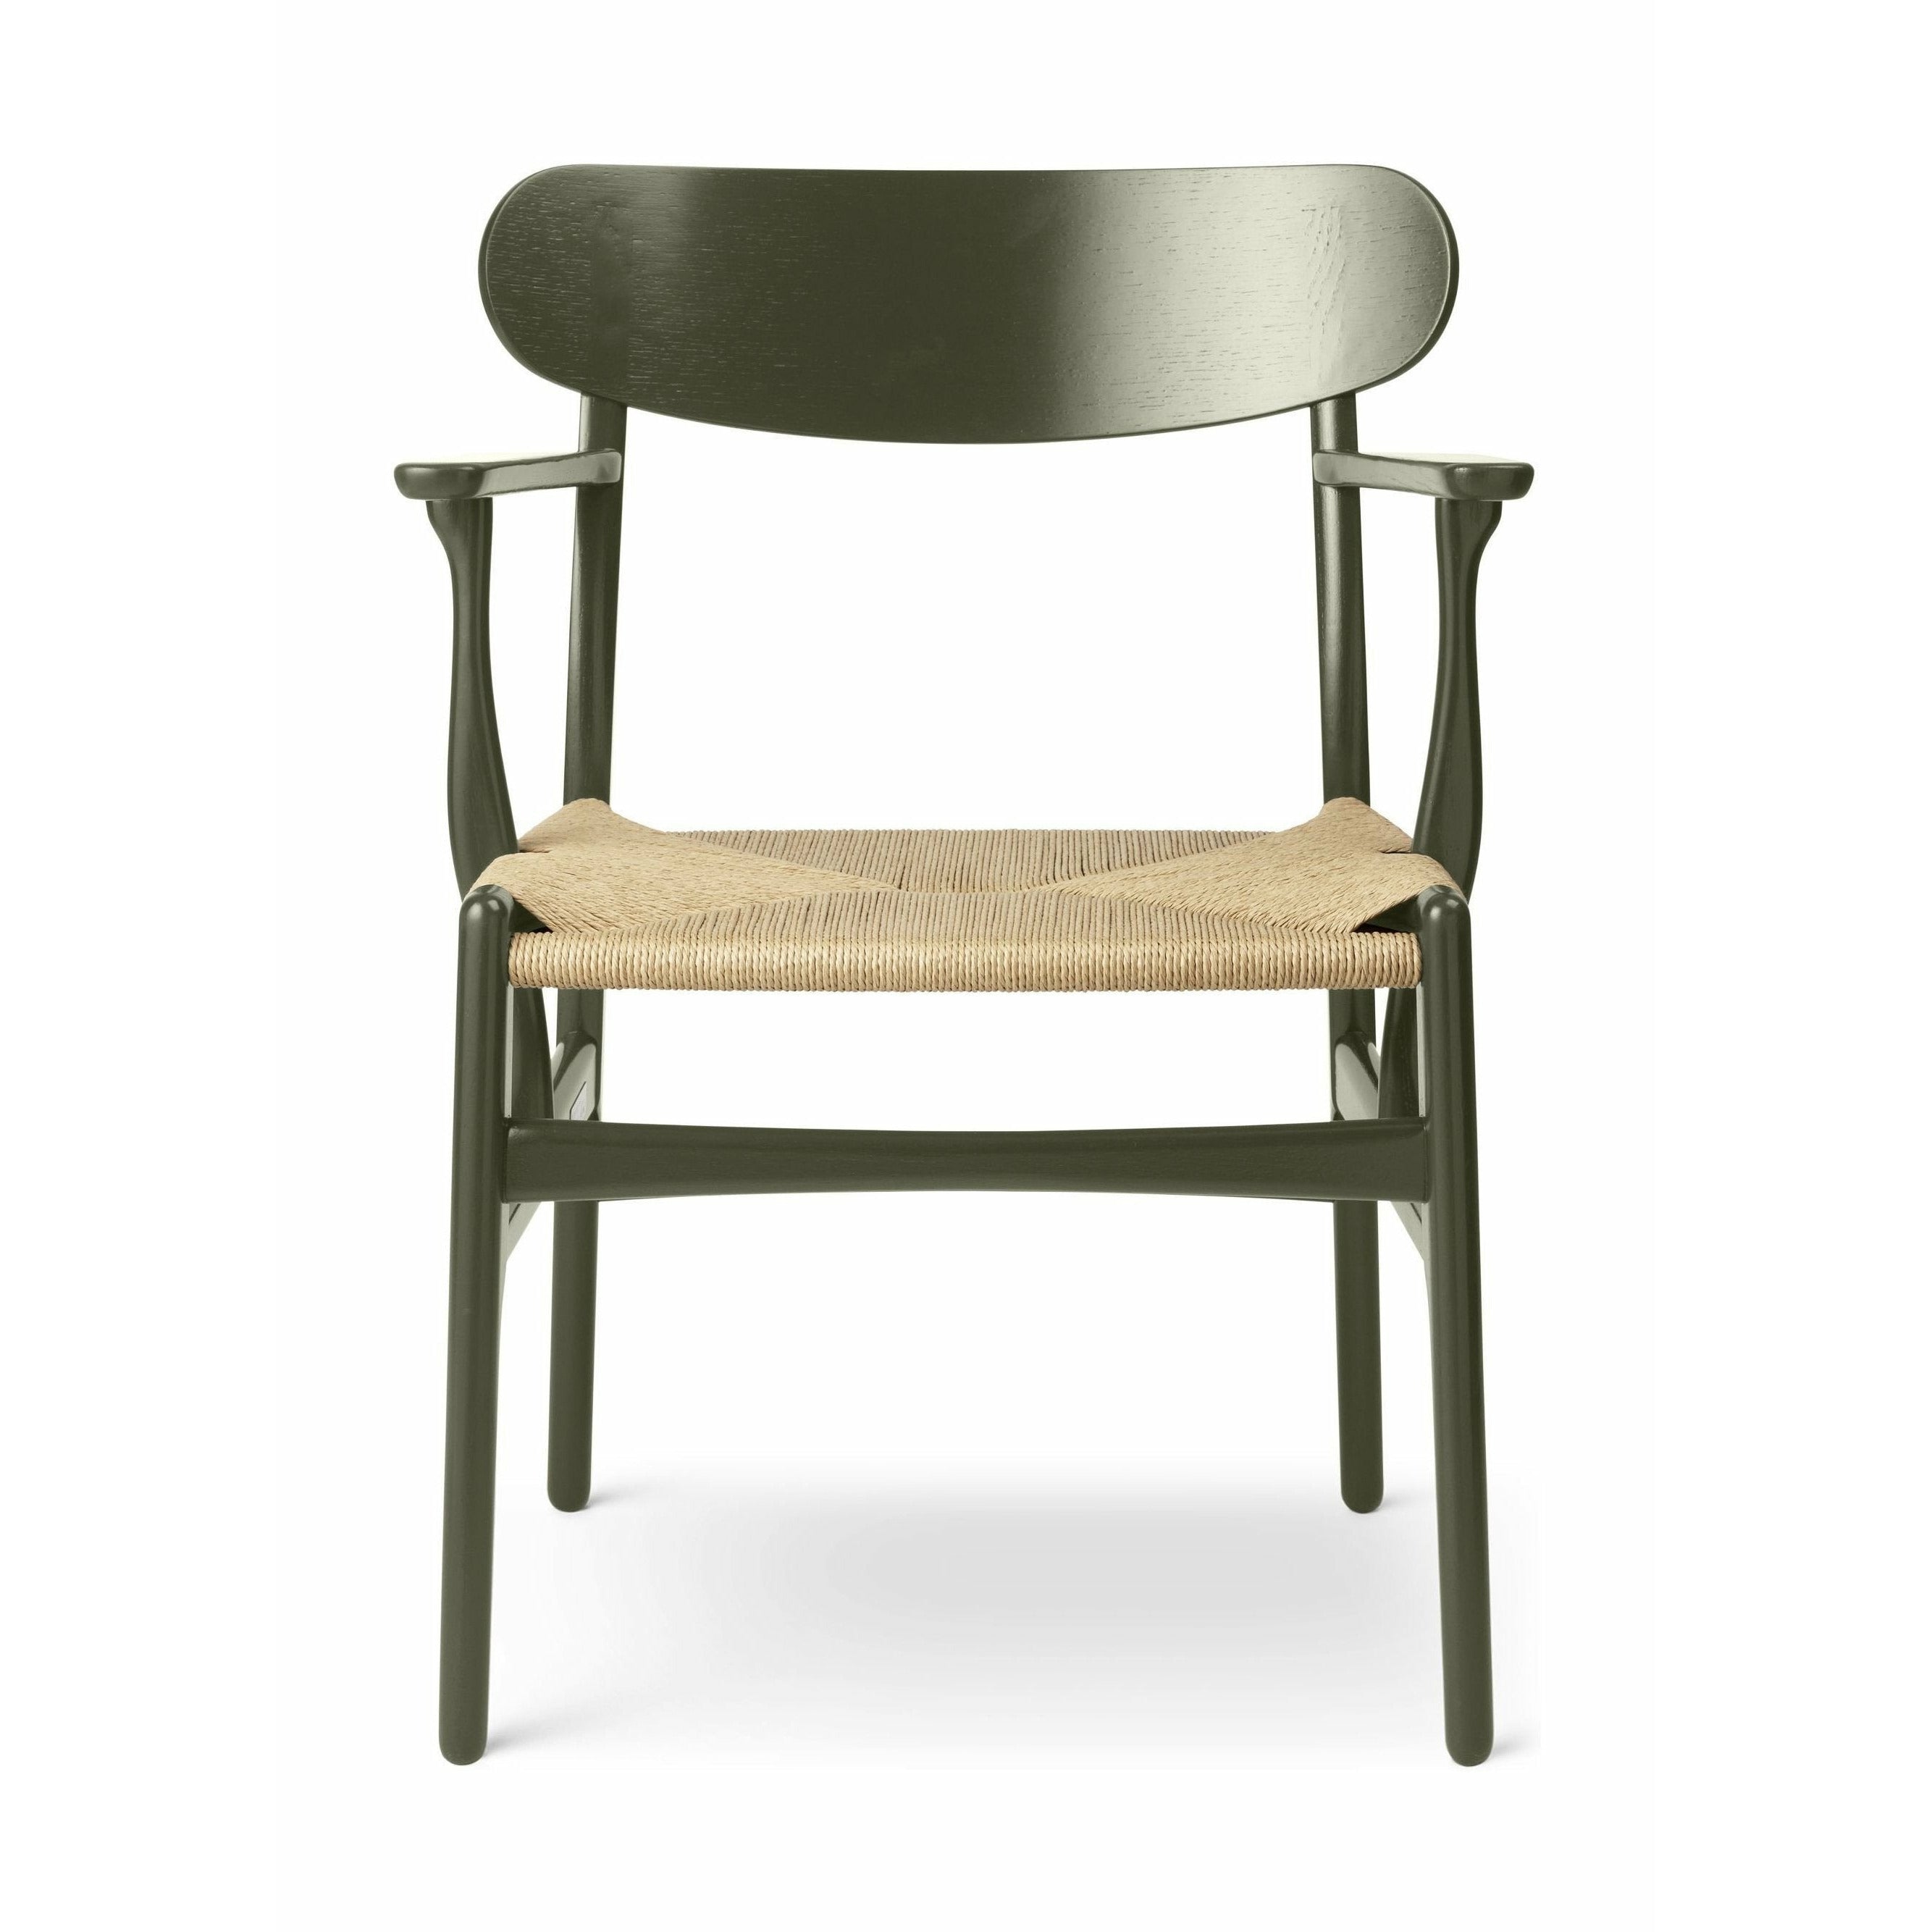 Carl Hansen CH26 -stol ek, tånggrön/naturlig sladd